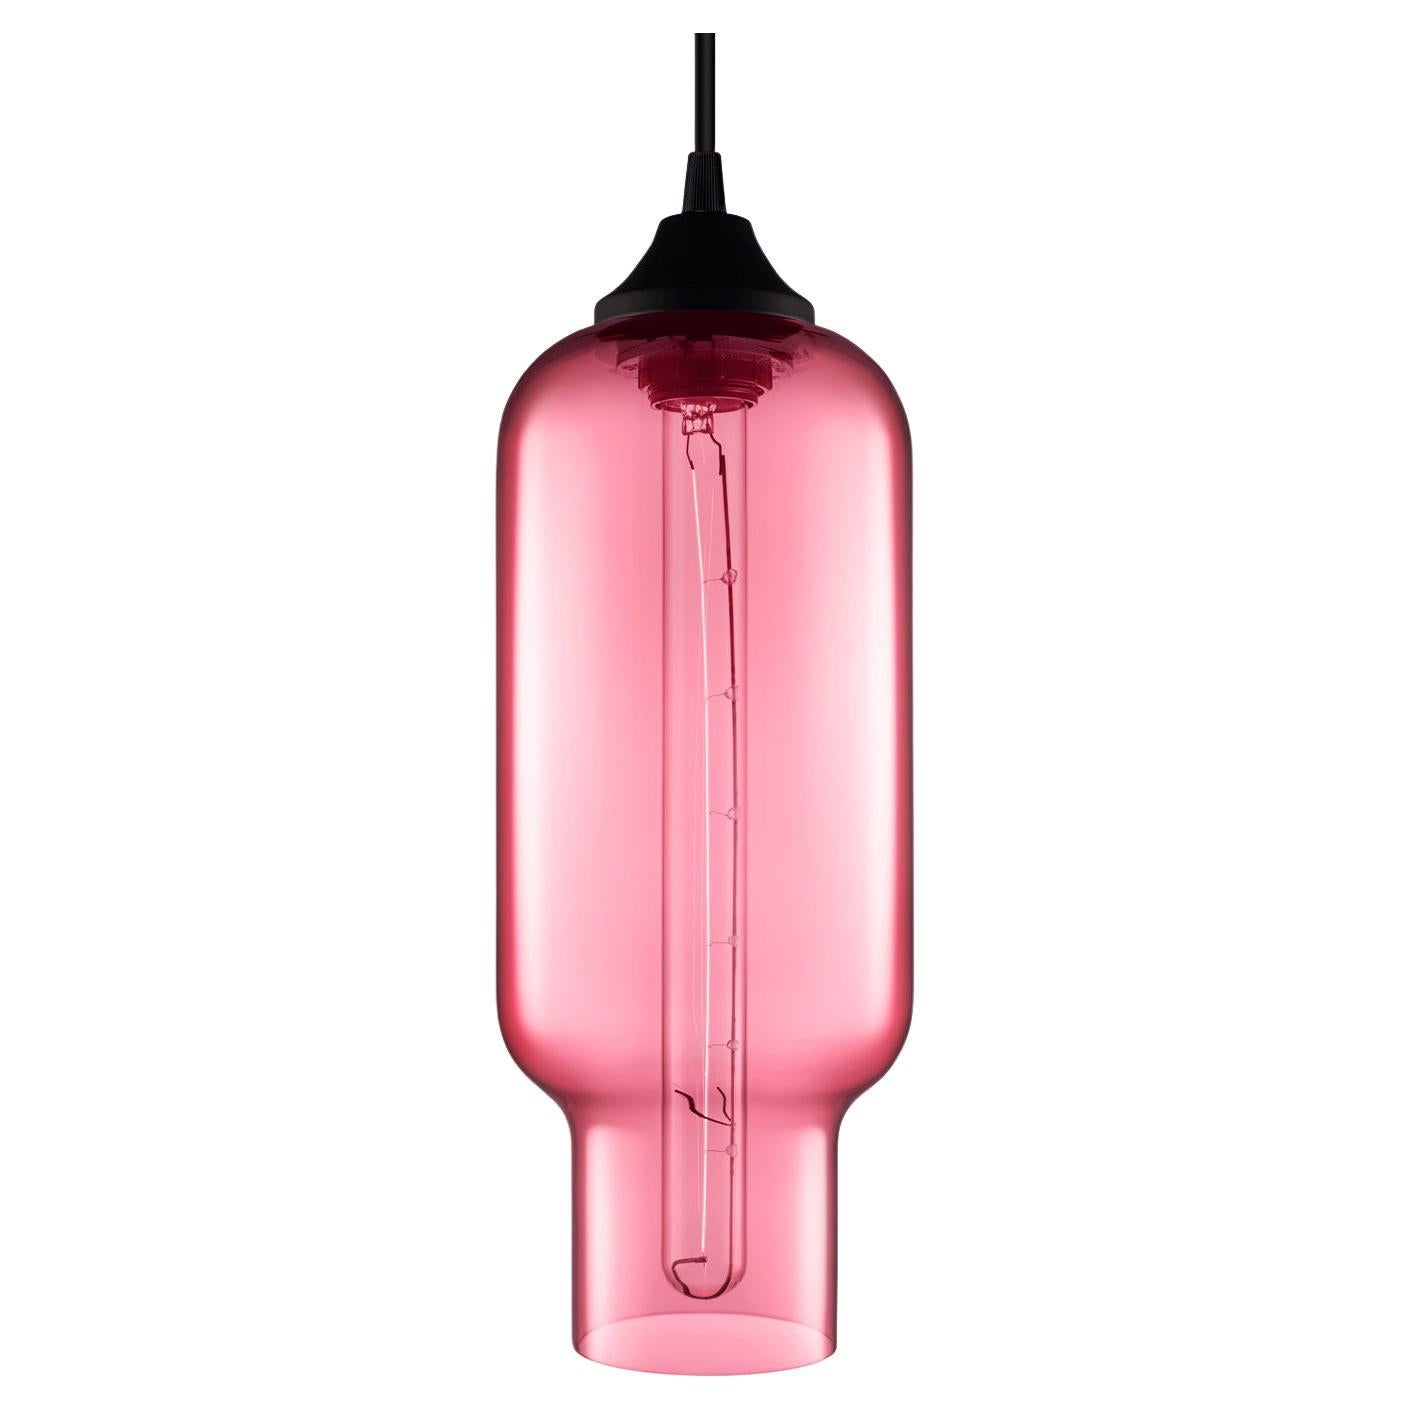 Pharos Rose Handblown Modern Glass Pendant Light, Made in the USA For Sale